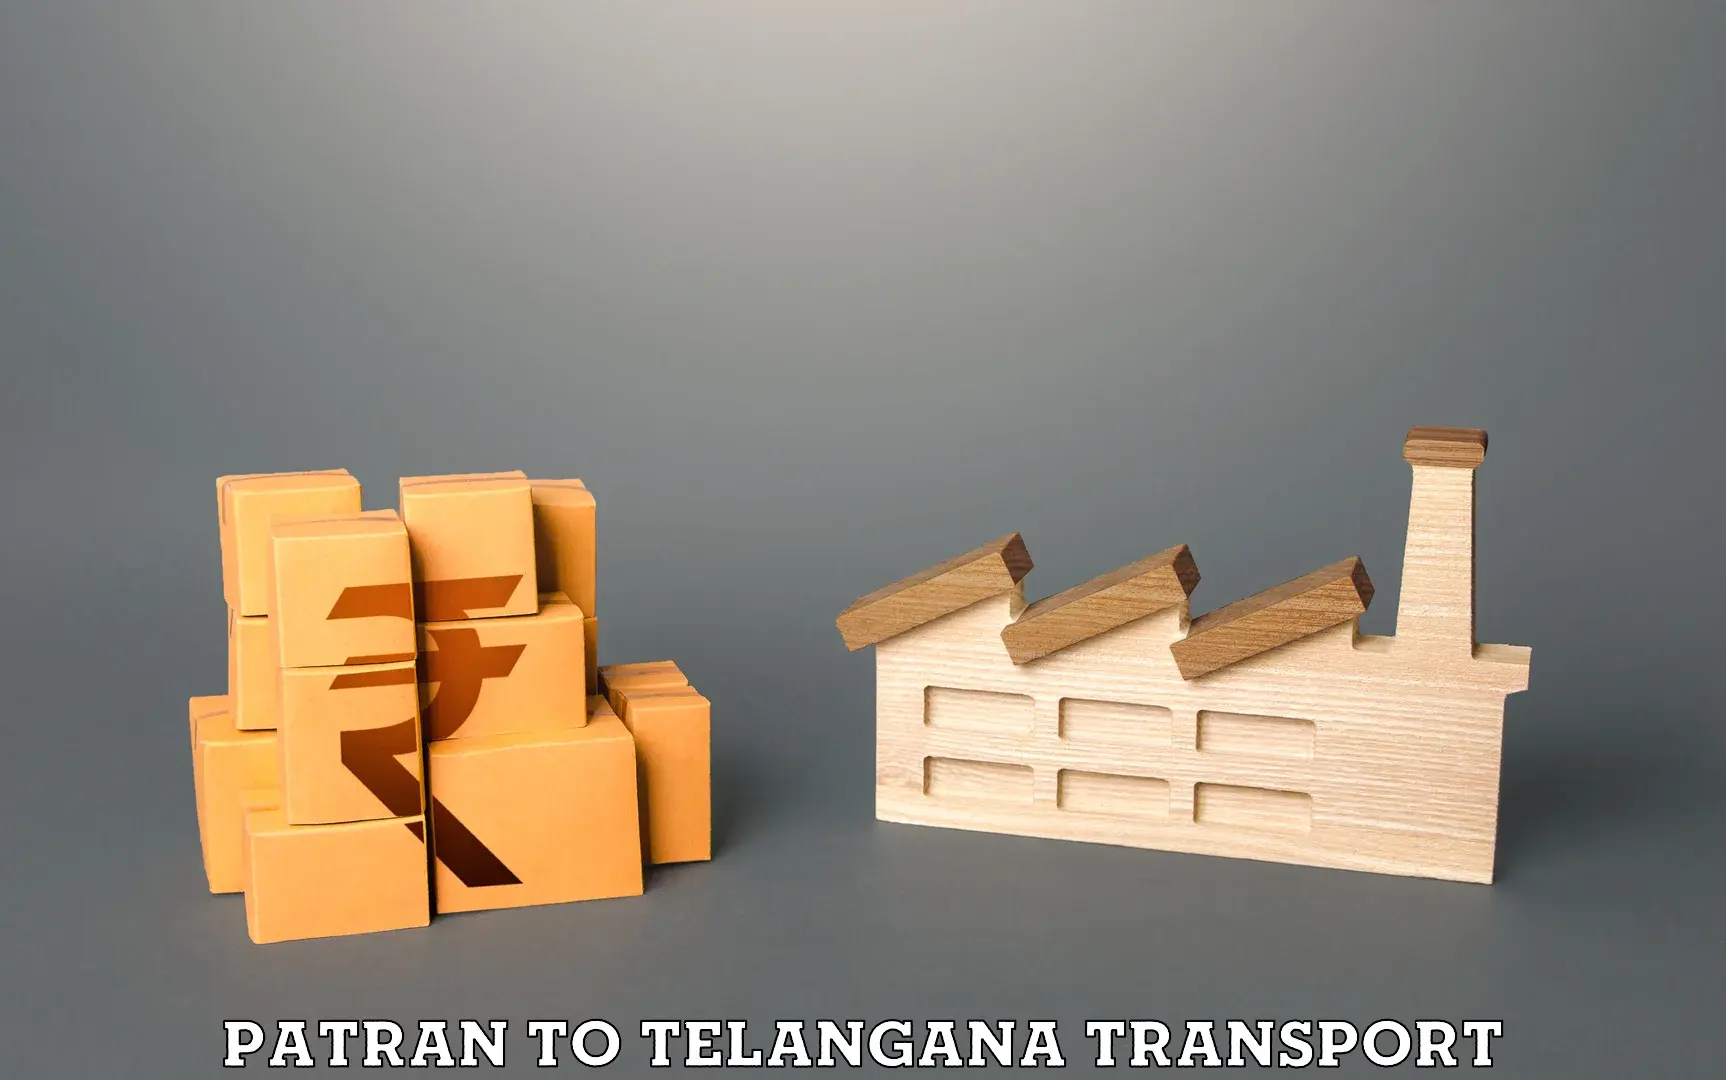 Commercial transport service Patran to Devarakonda